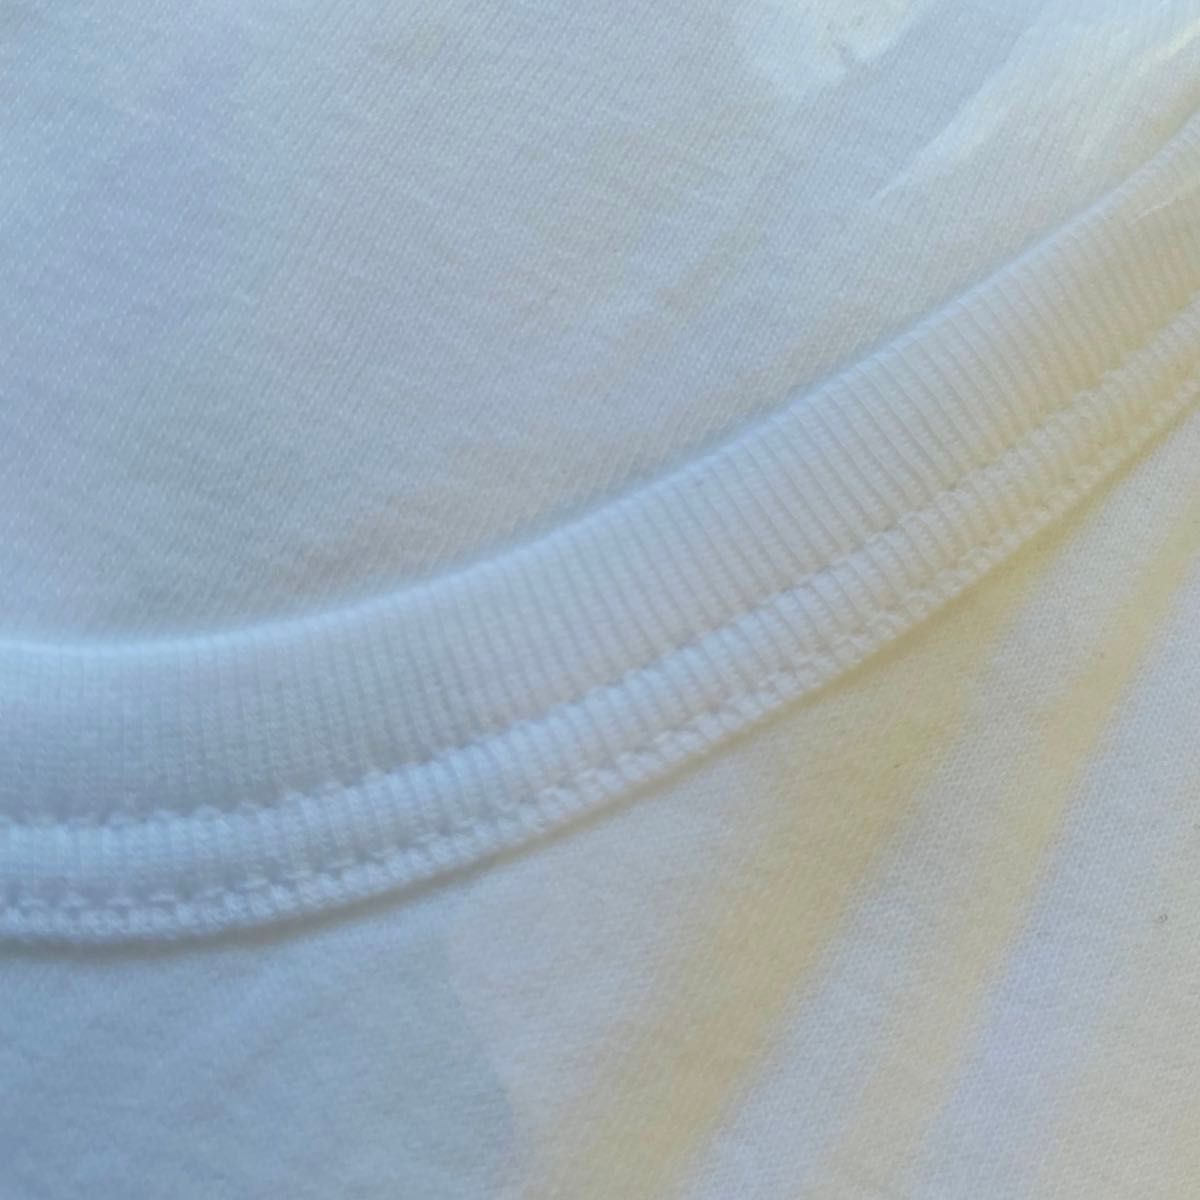 綿100% メンズ LLサイズ 半袖V首 2枚組 オールシーズン対応 アンダーウェア コットン 柔らかい ホワイト 送料込み